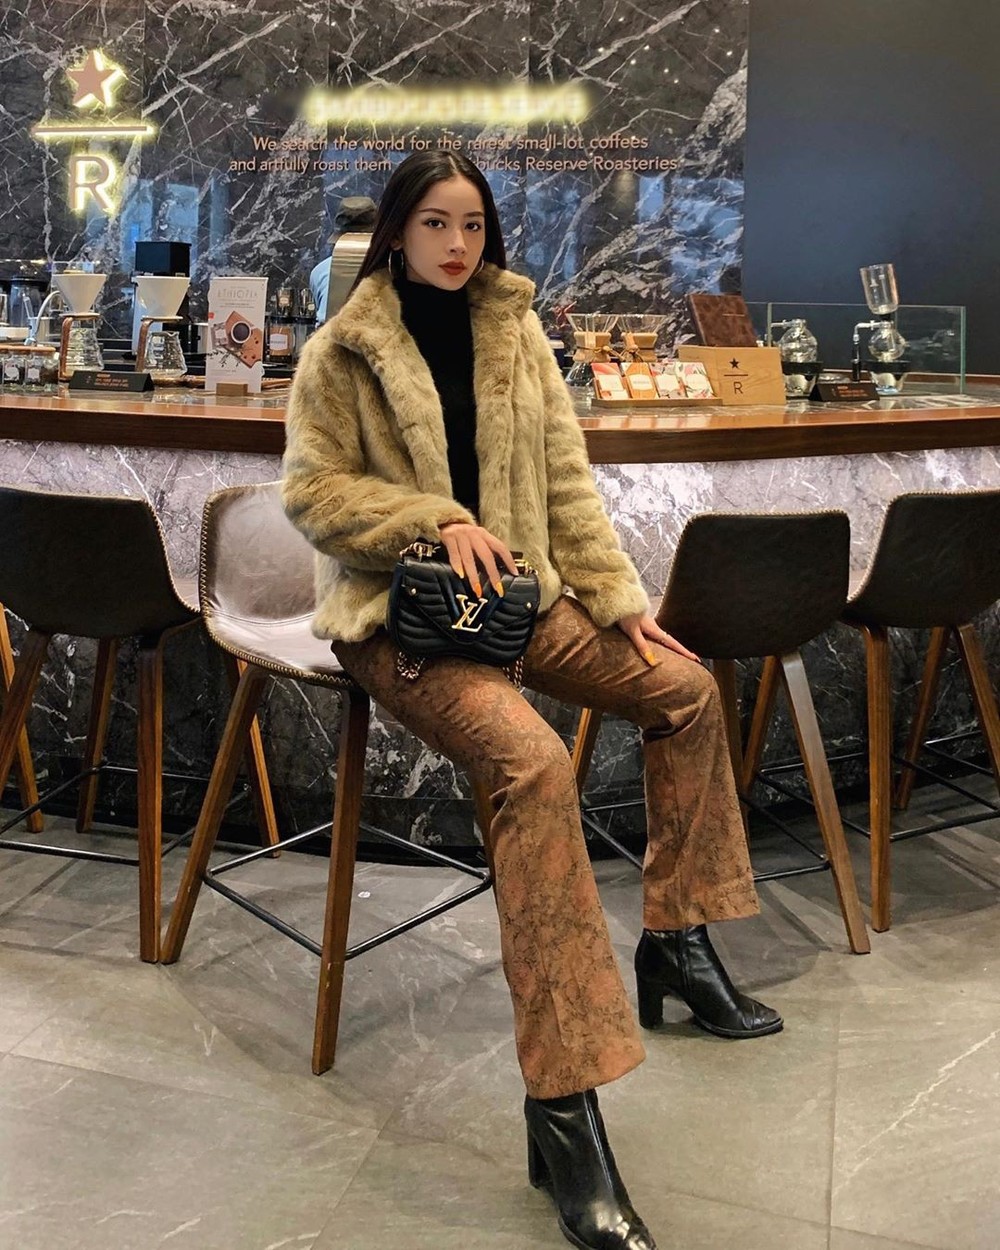  
Sau Thái Lan, Chi Pu tiếp tục du lịch ở Hàn Quốc, tại đây người đẹp diện đồ ấm hơn với áo khoác lông và boot cao cổ. Bộ cánh được người đẹp mix cùng túi xách LV đắt đỏ. 